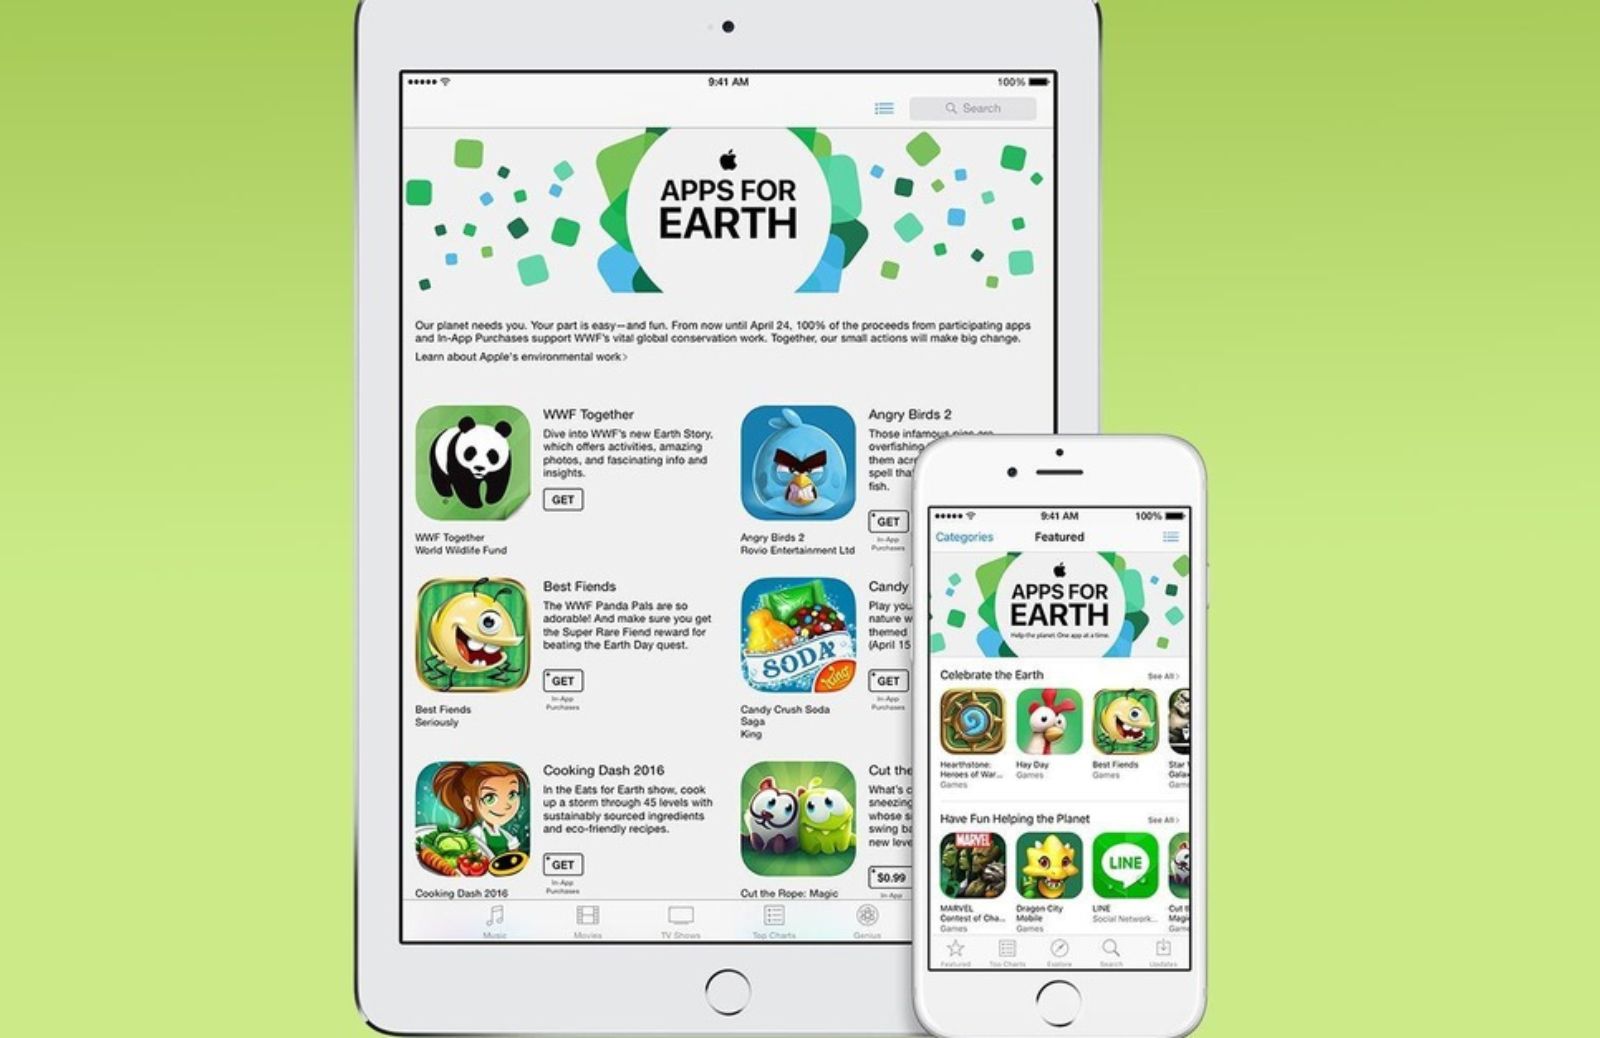 #AppsforEarth per l’Earth Day 2016 